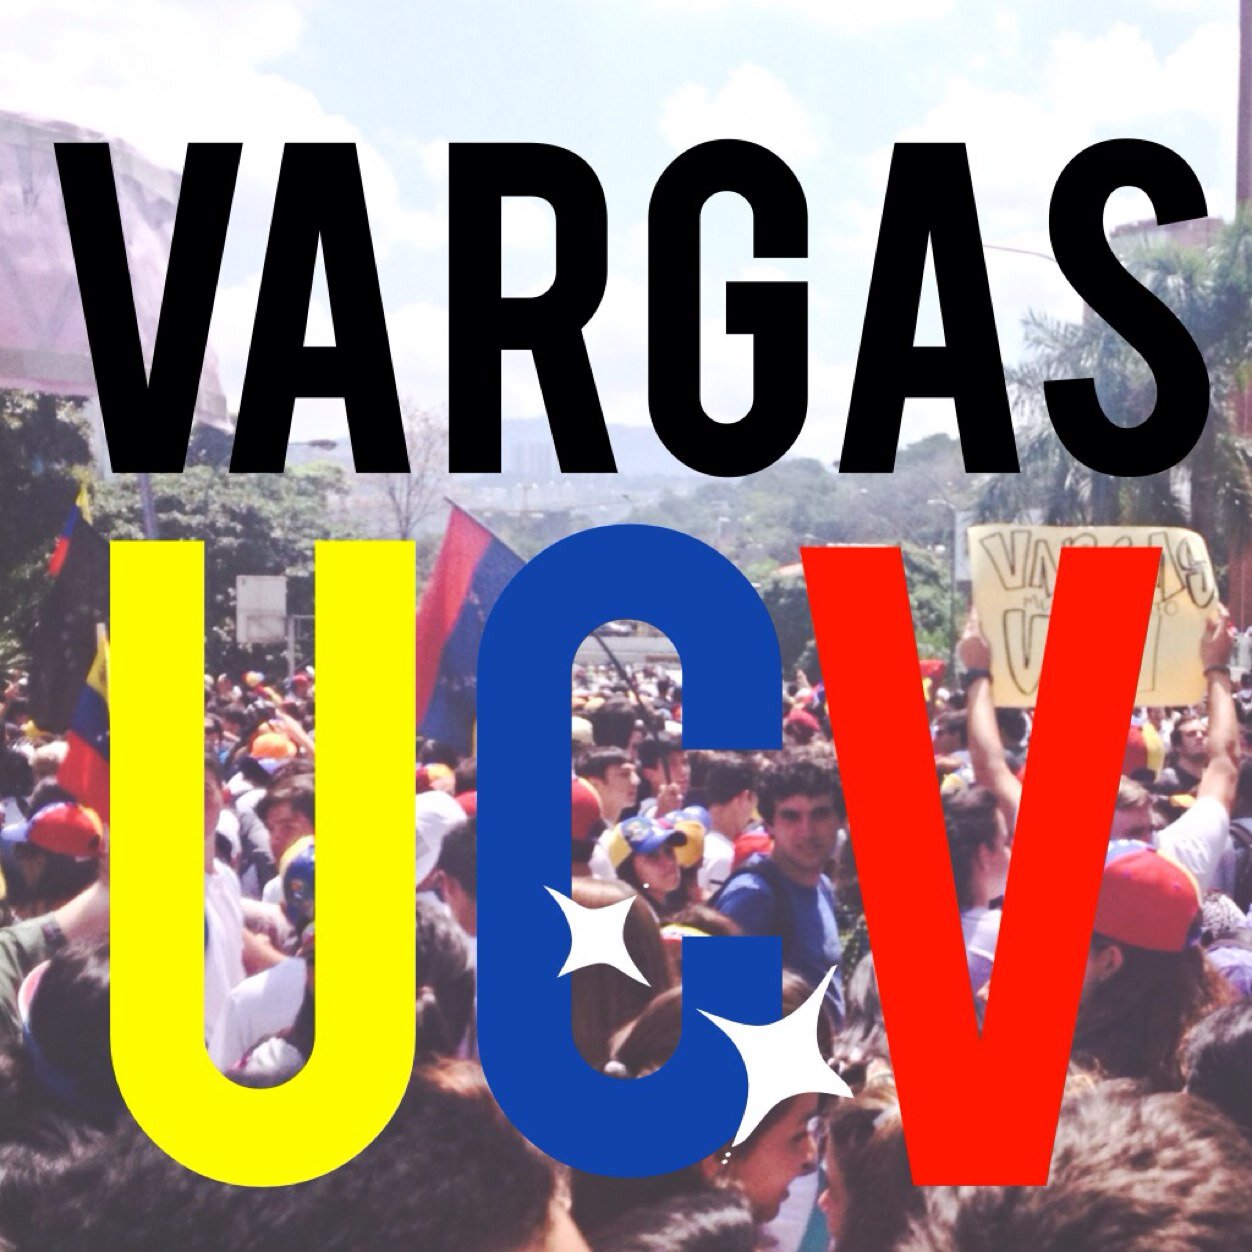 Cuenta creada para informar a los Varguistas, sobre actividades de protestas, marchas y concentraciones. Mencionen a @Vargas_UCV para dar cualquier información.